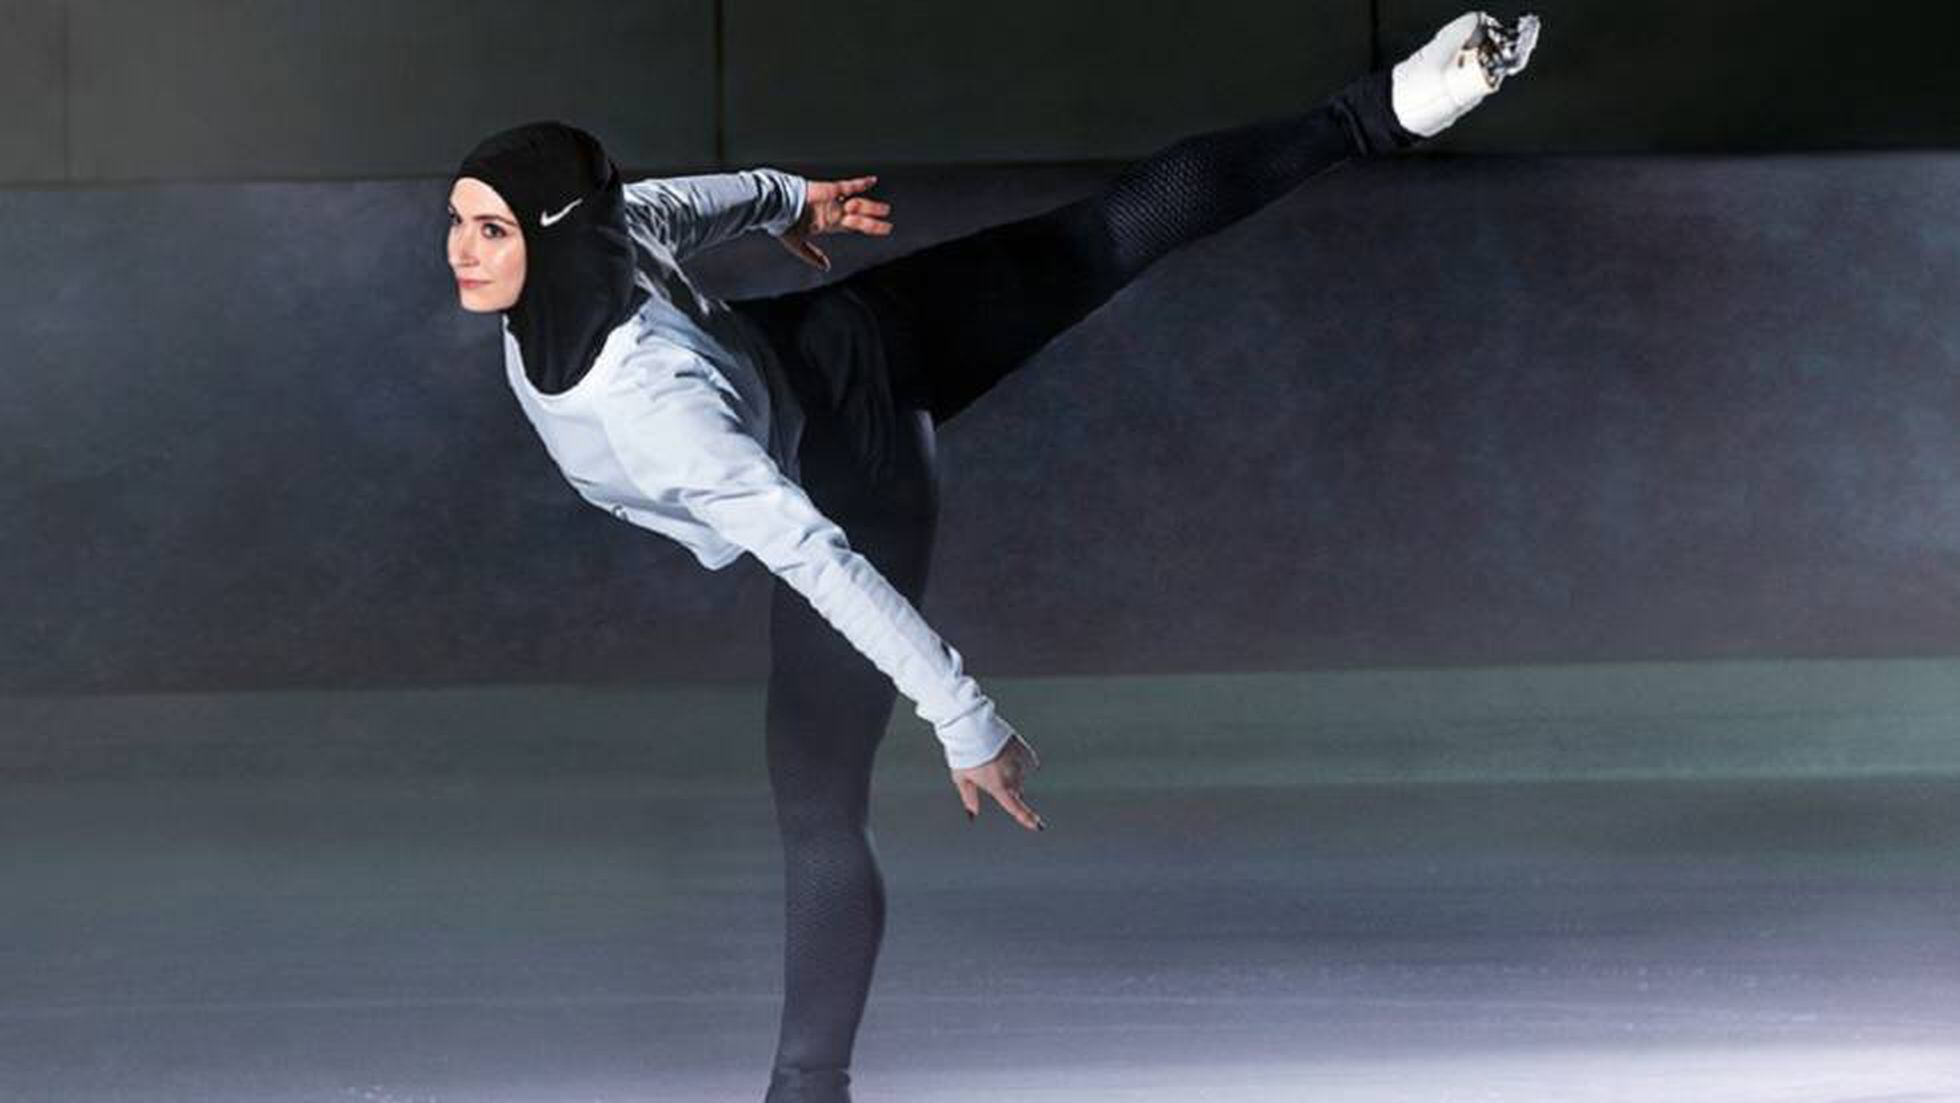 Presunto relajado apertura Nike lanza un hiyab de competición destinado a las atletas musulmanas |  Estilo | EL PAÍS